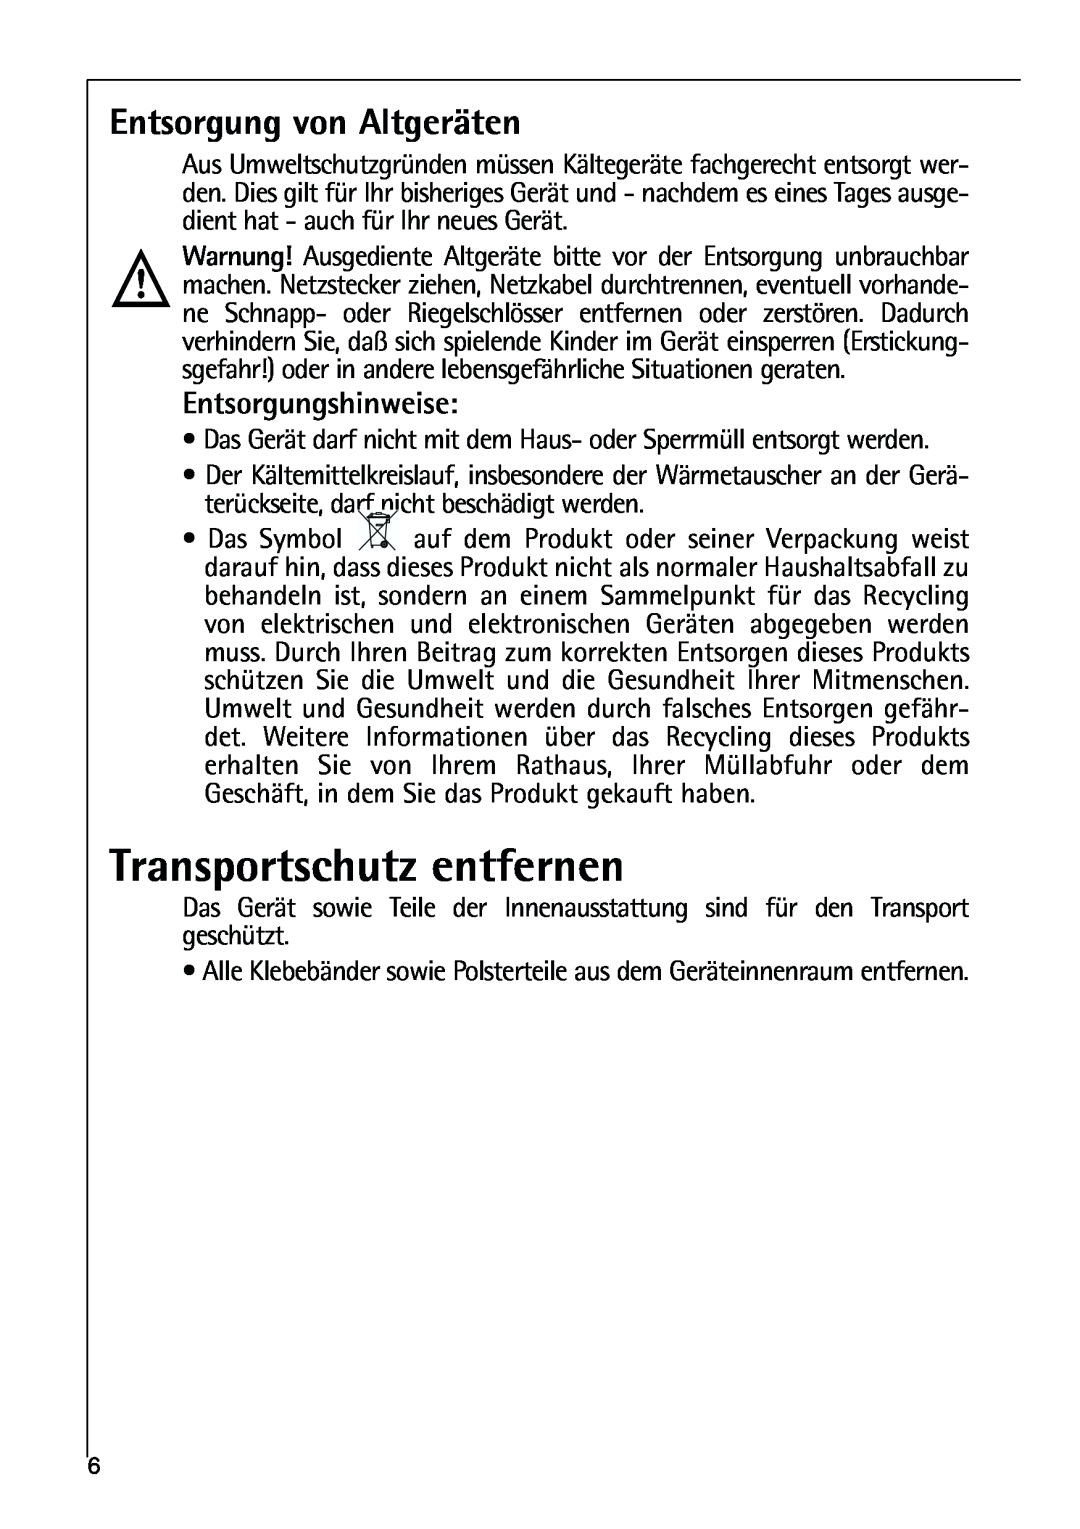 AEG 80318-5 KG user manual Transportschutz entfernen, Entsorgung von Altgeräten, Entsorgungshinweise 